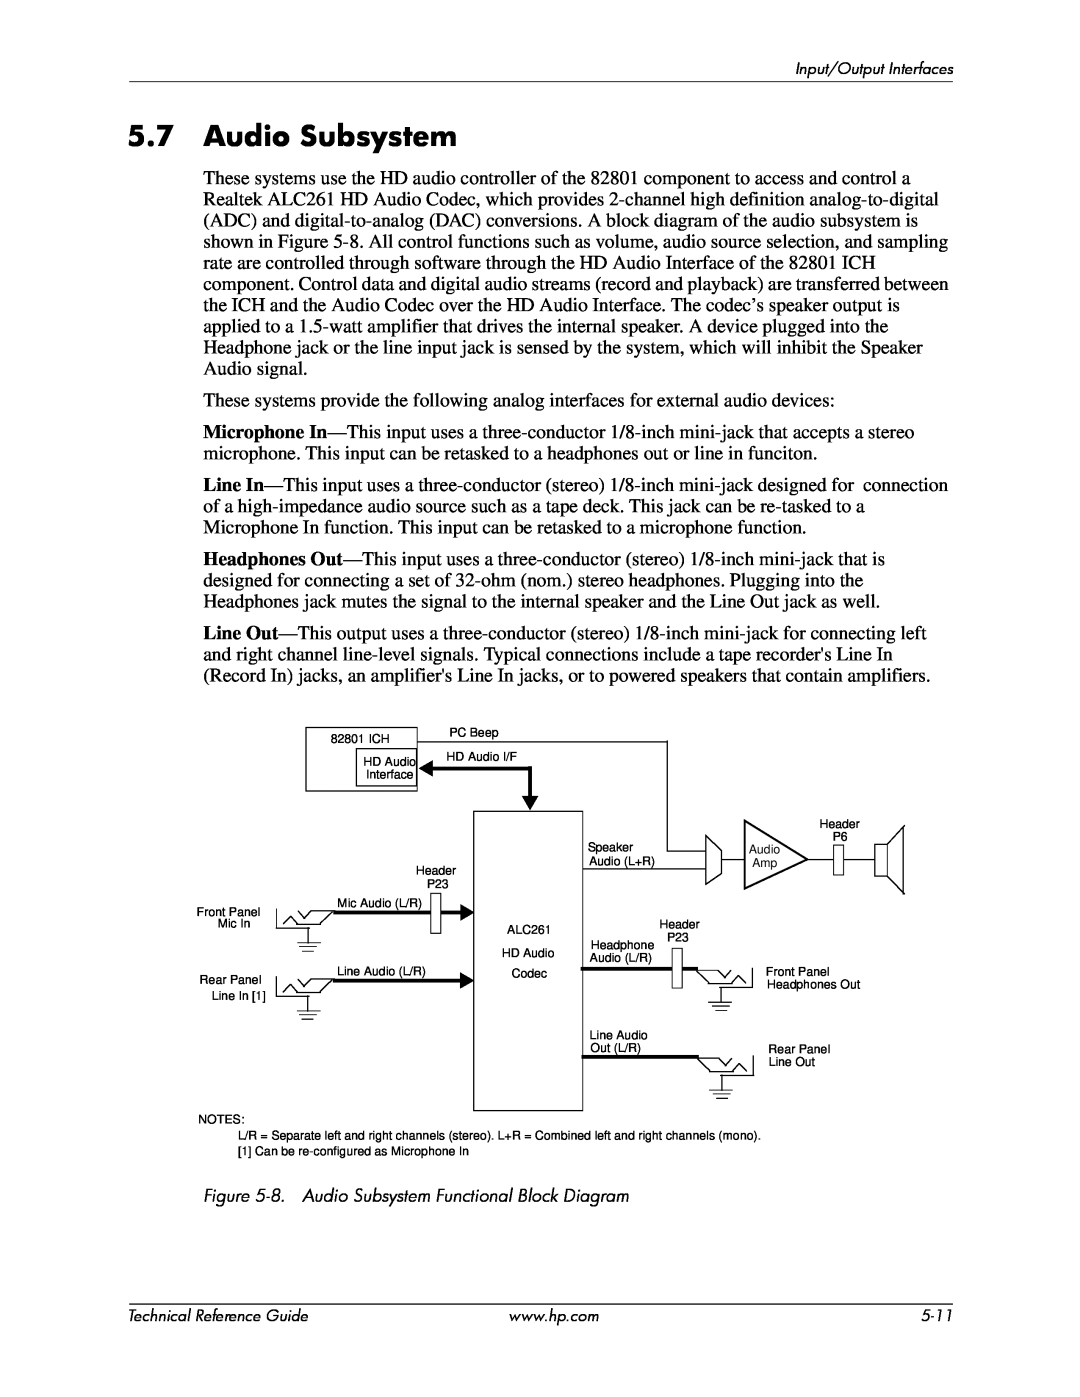 HP 8000 tower manual 8. Audio Subsystem Functional Block Diagram 